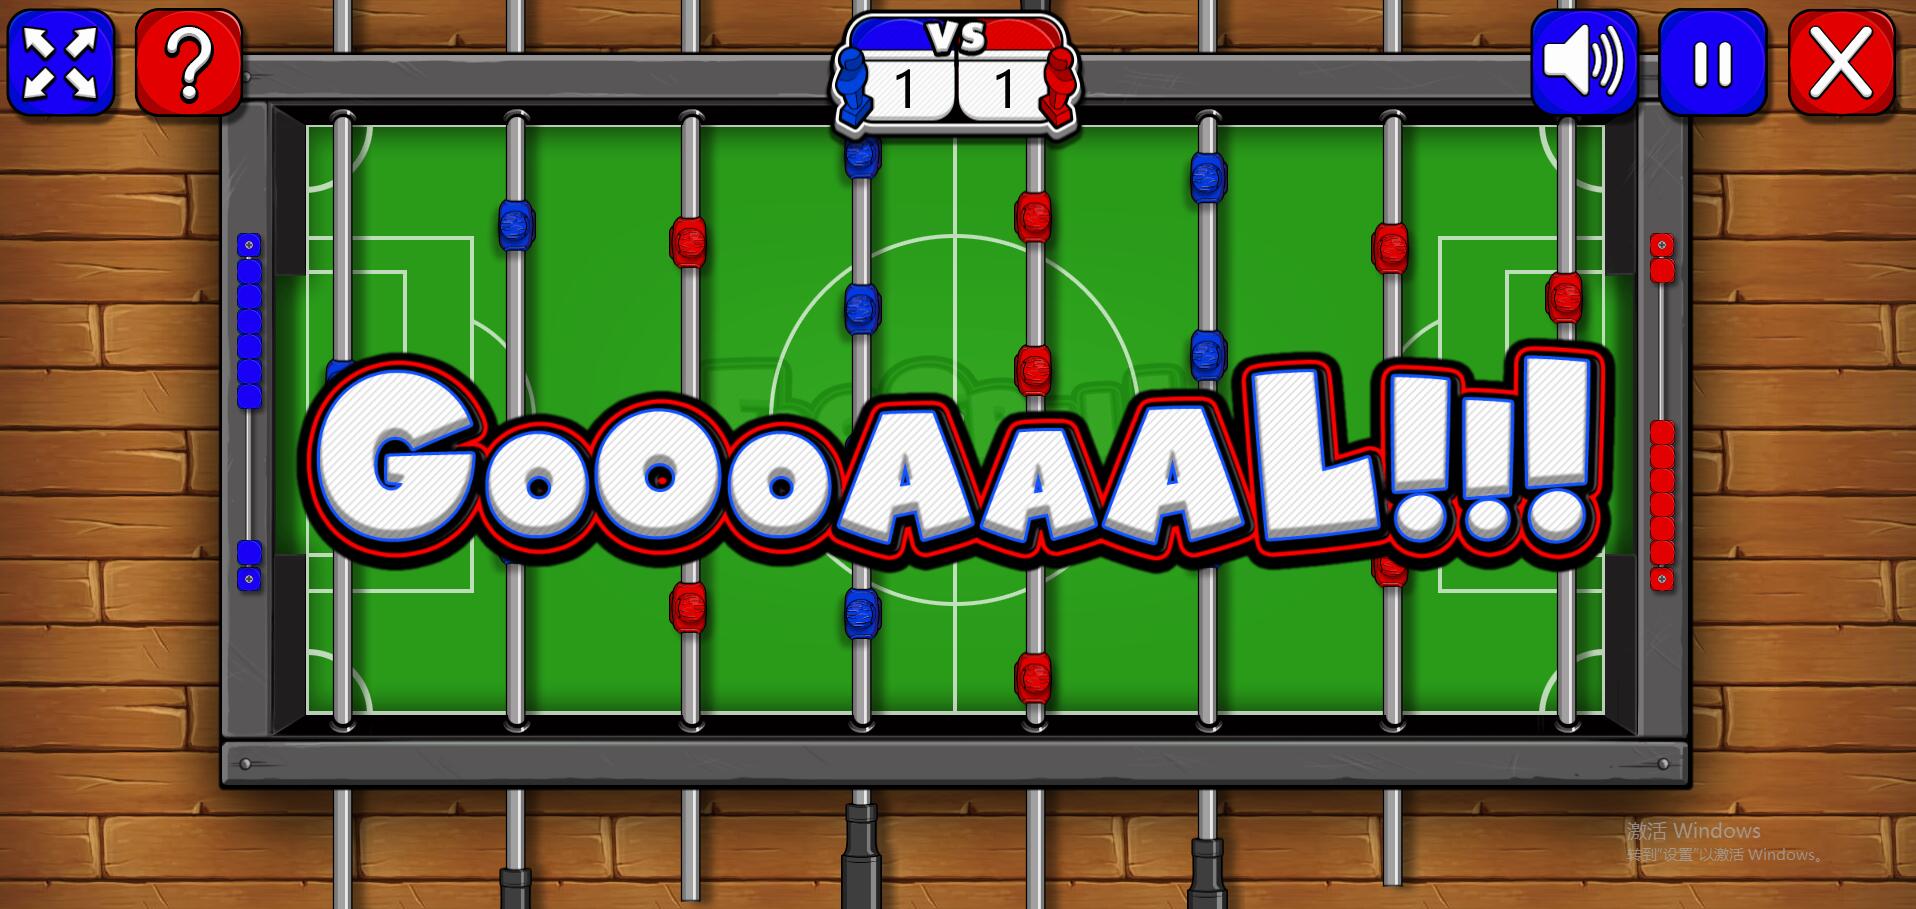 HTML5游戏《桌上足球》源码下载 HTML5游戏源码免费下载